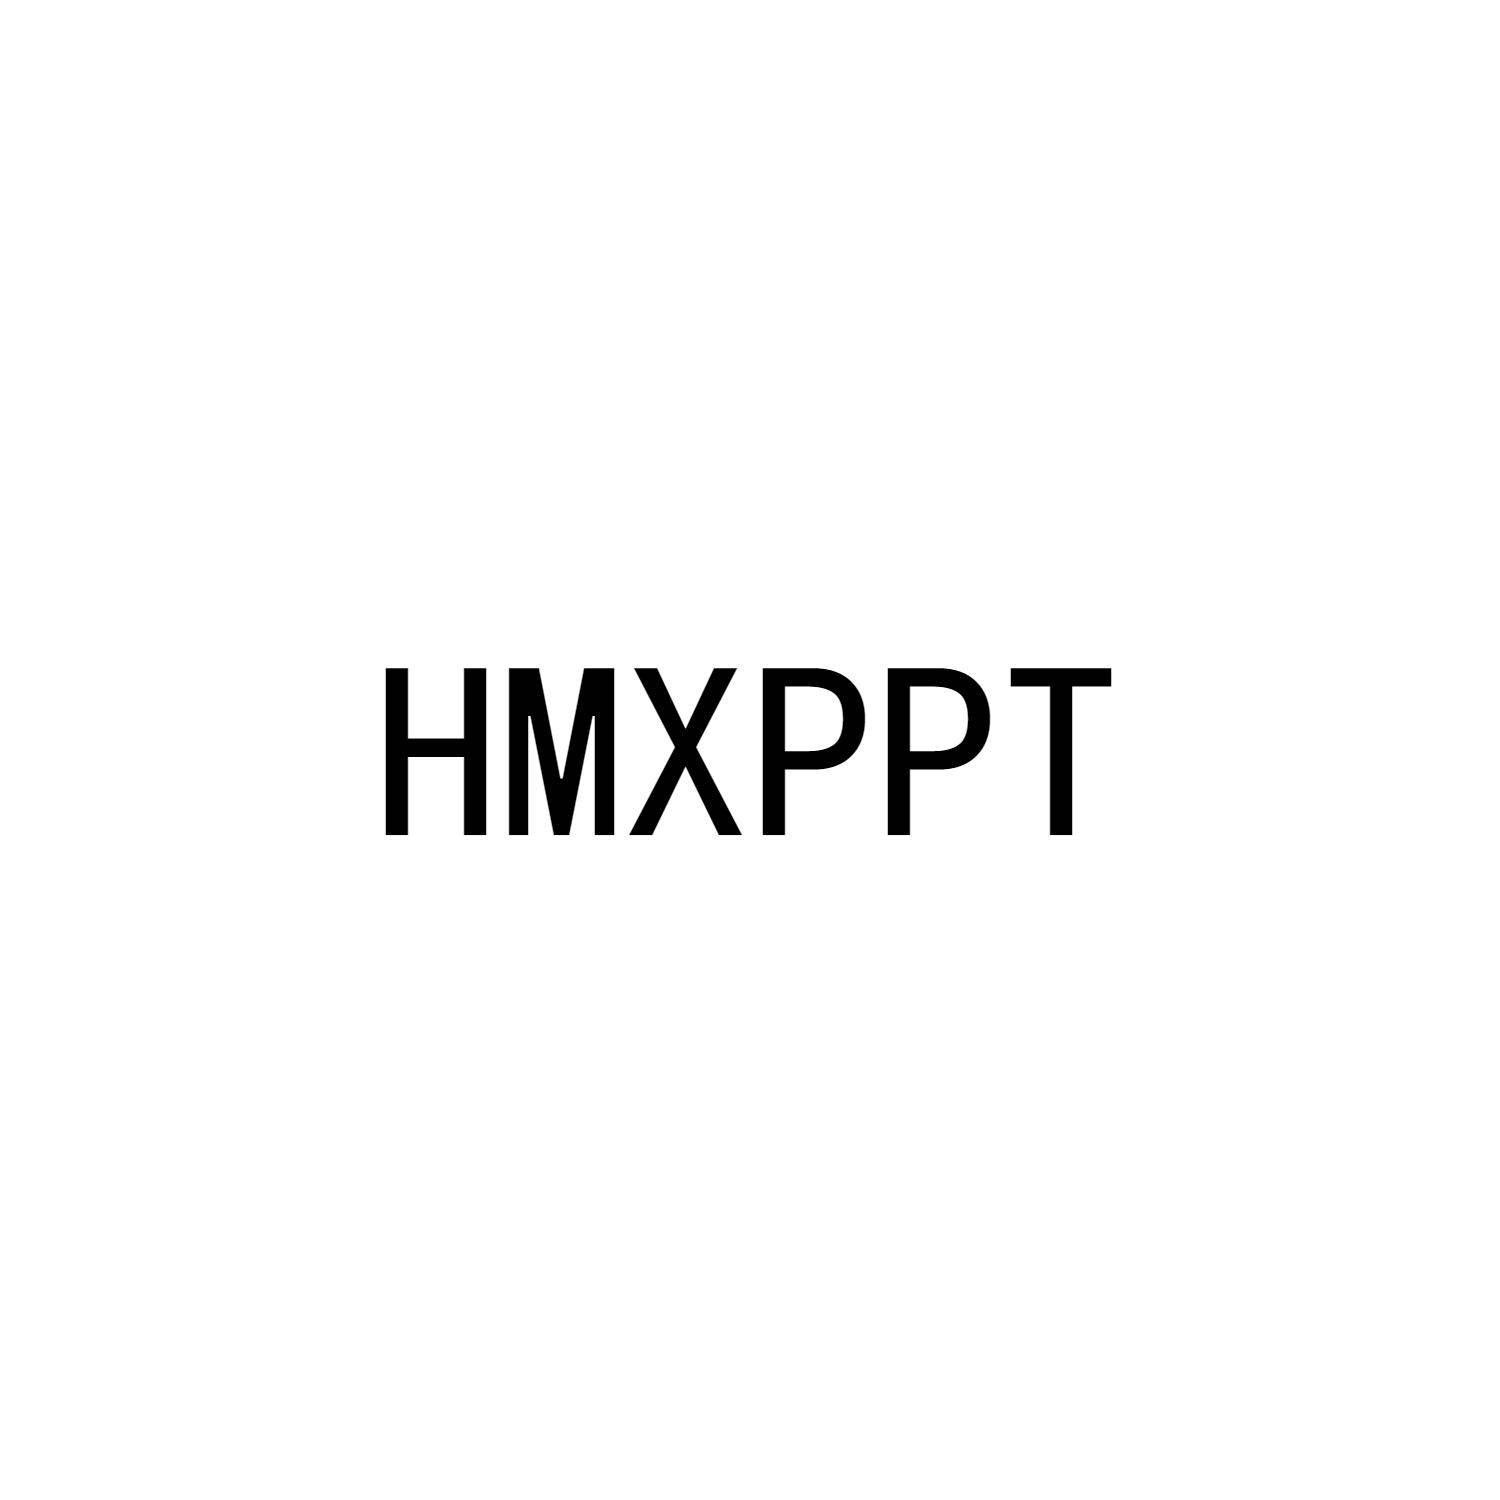 HMXPPT